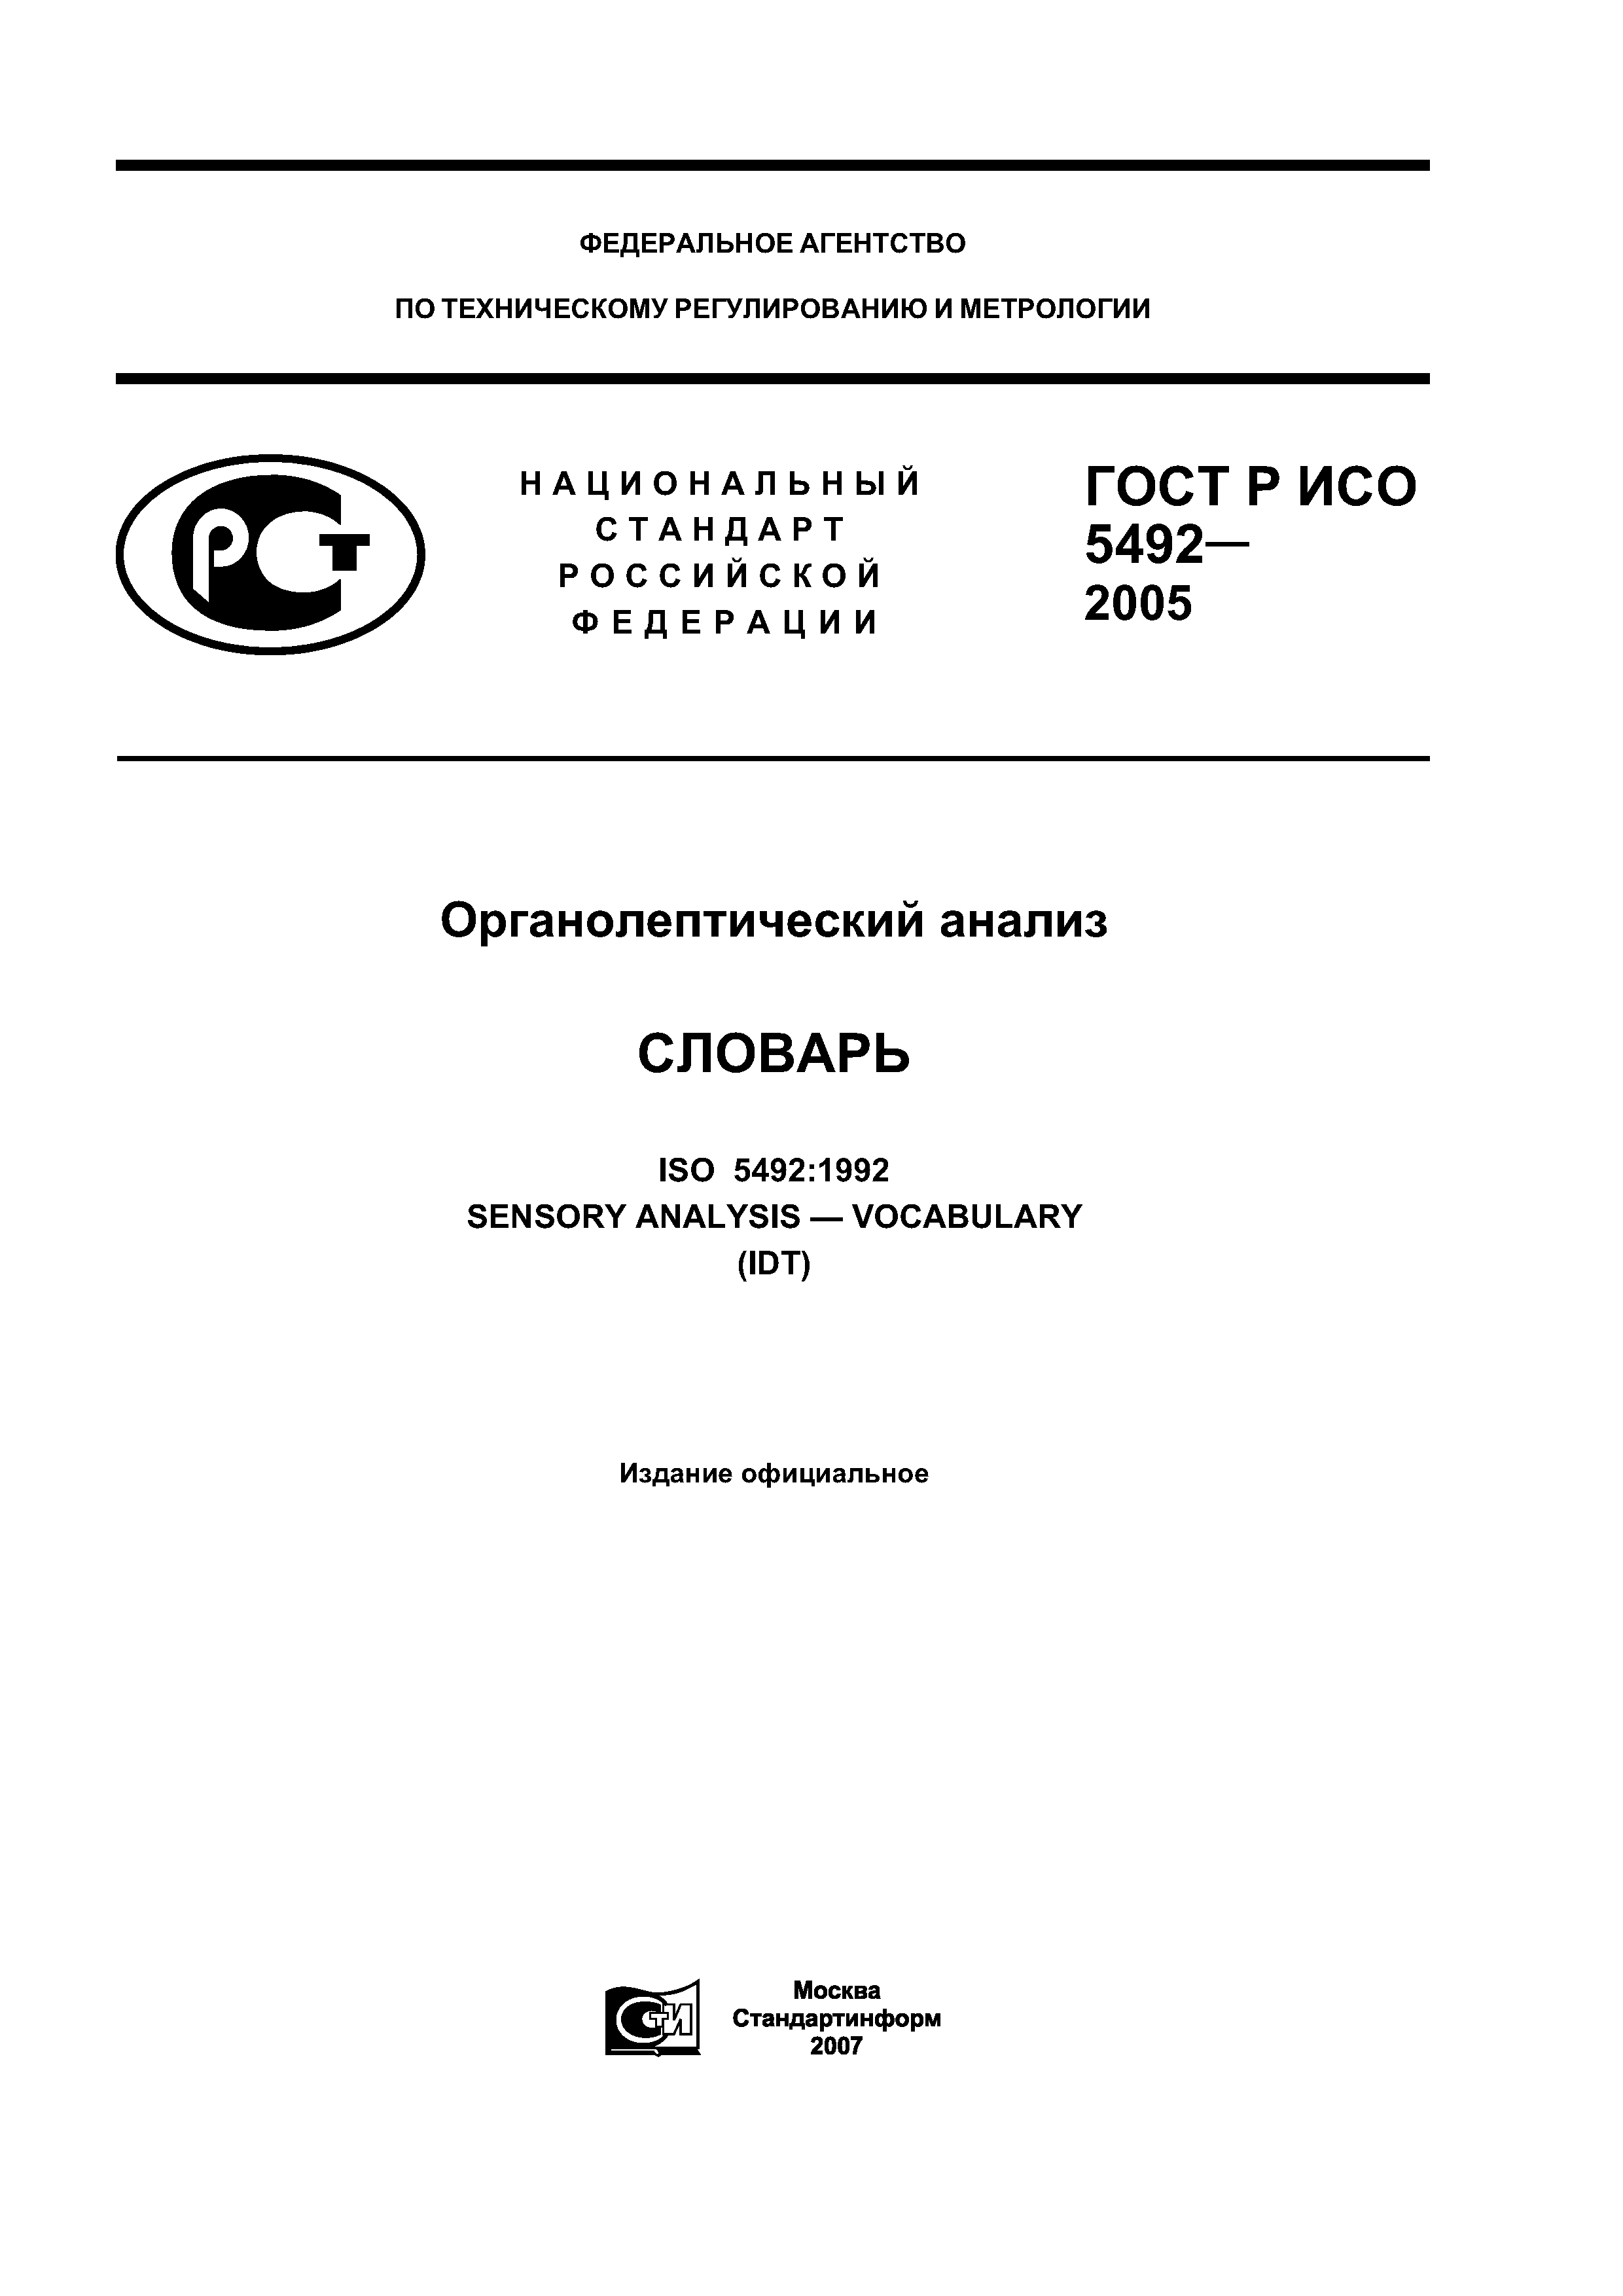 ГОСТ Р ИСО 5492-2005